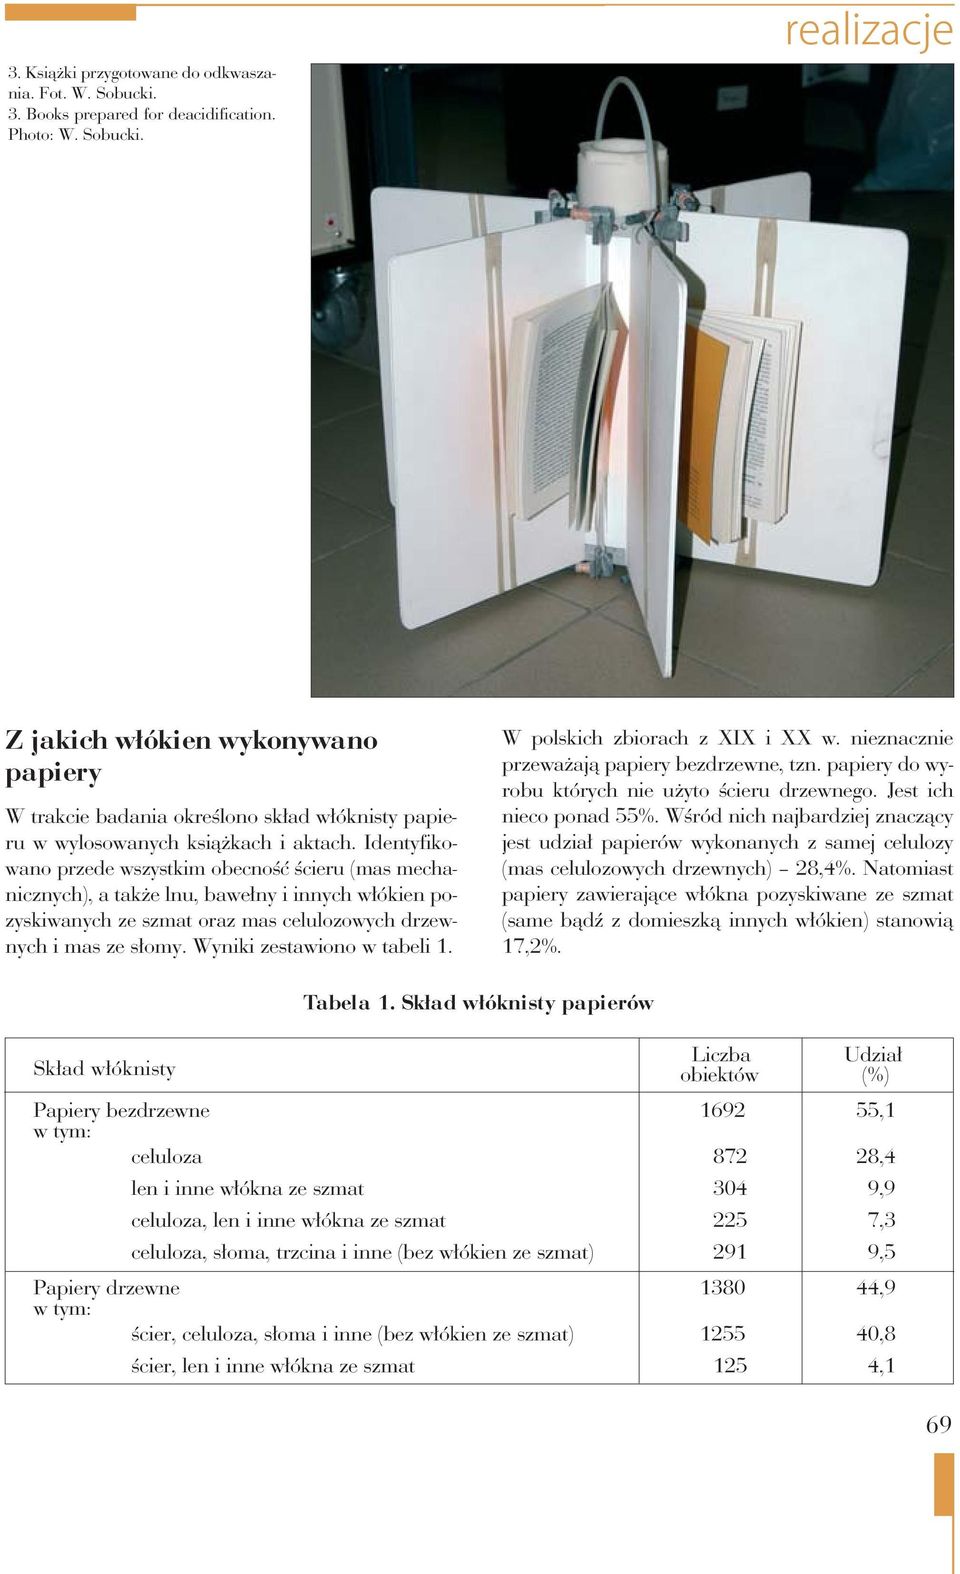 Wyniki zestawiono w tabeli 1. W polskich zbiorach z XIX i XX w. nieznacznie przeważają papiery bezdrzewne, tzn. papiery do wyrobu których nie użyto ścieru drzewnego. Jest ich nieco ponad 55%.